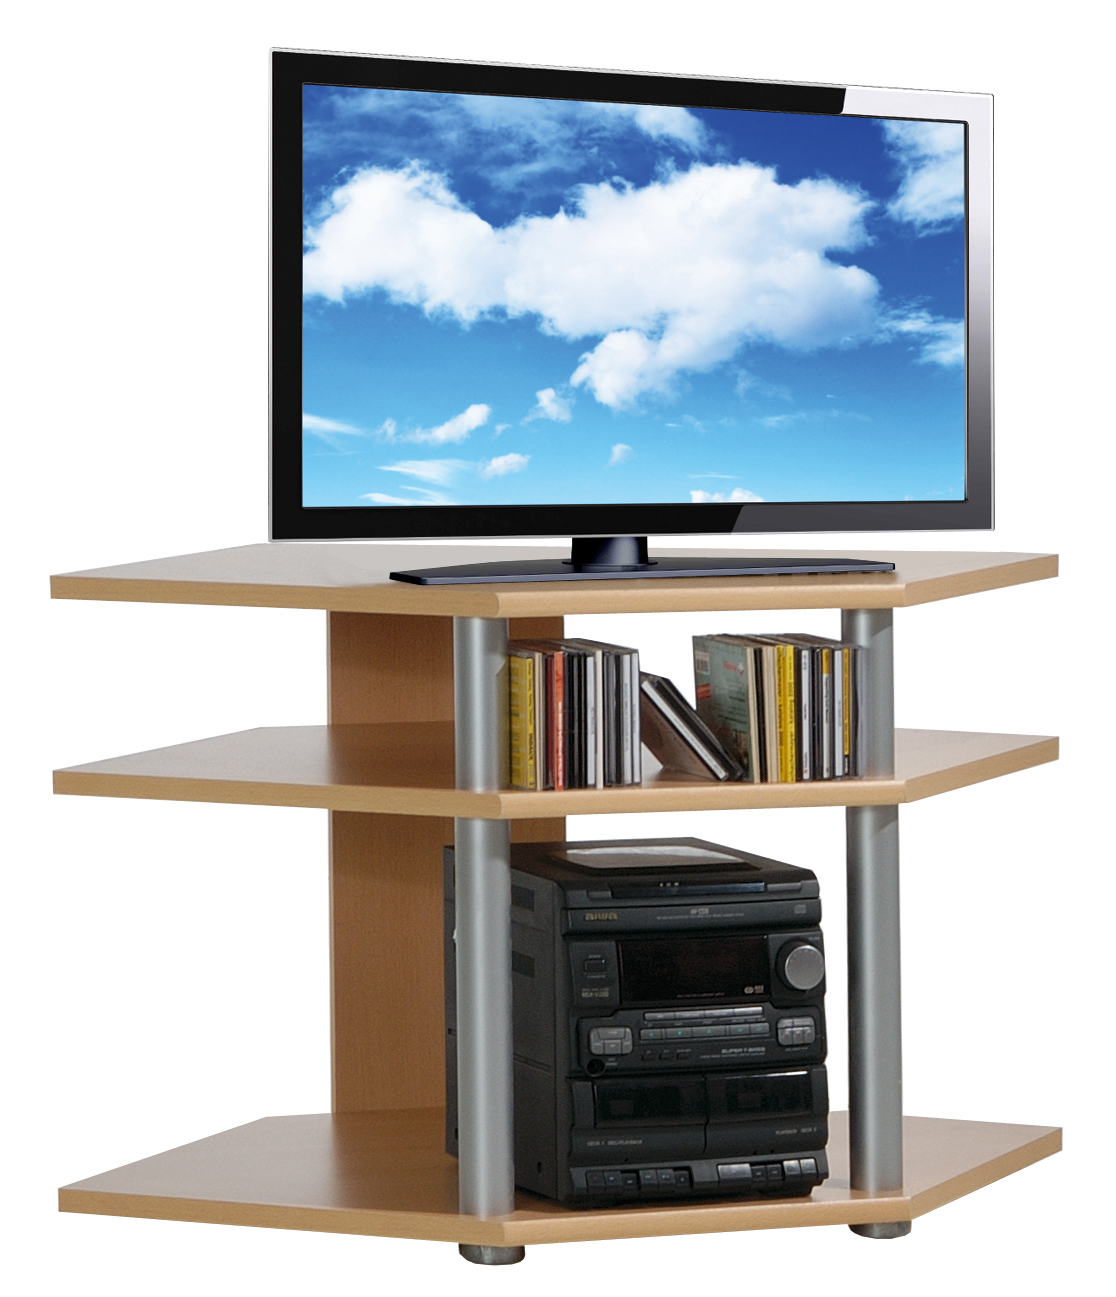 Televizní stolek Da Vinci Daniel DVRT0004-04, buk